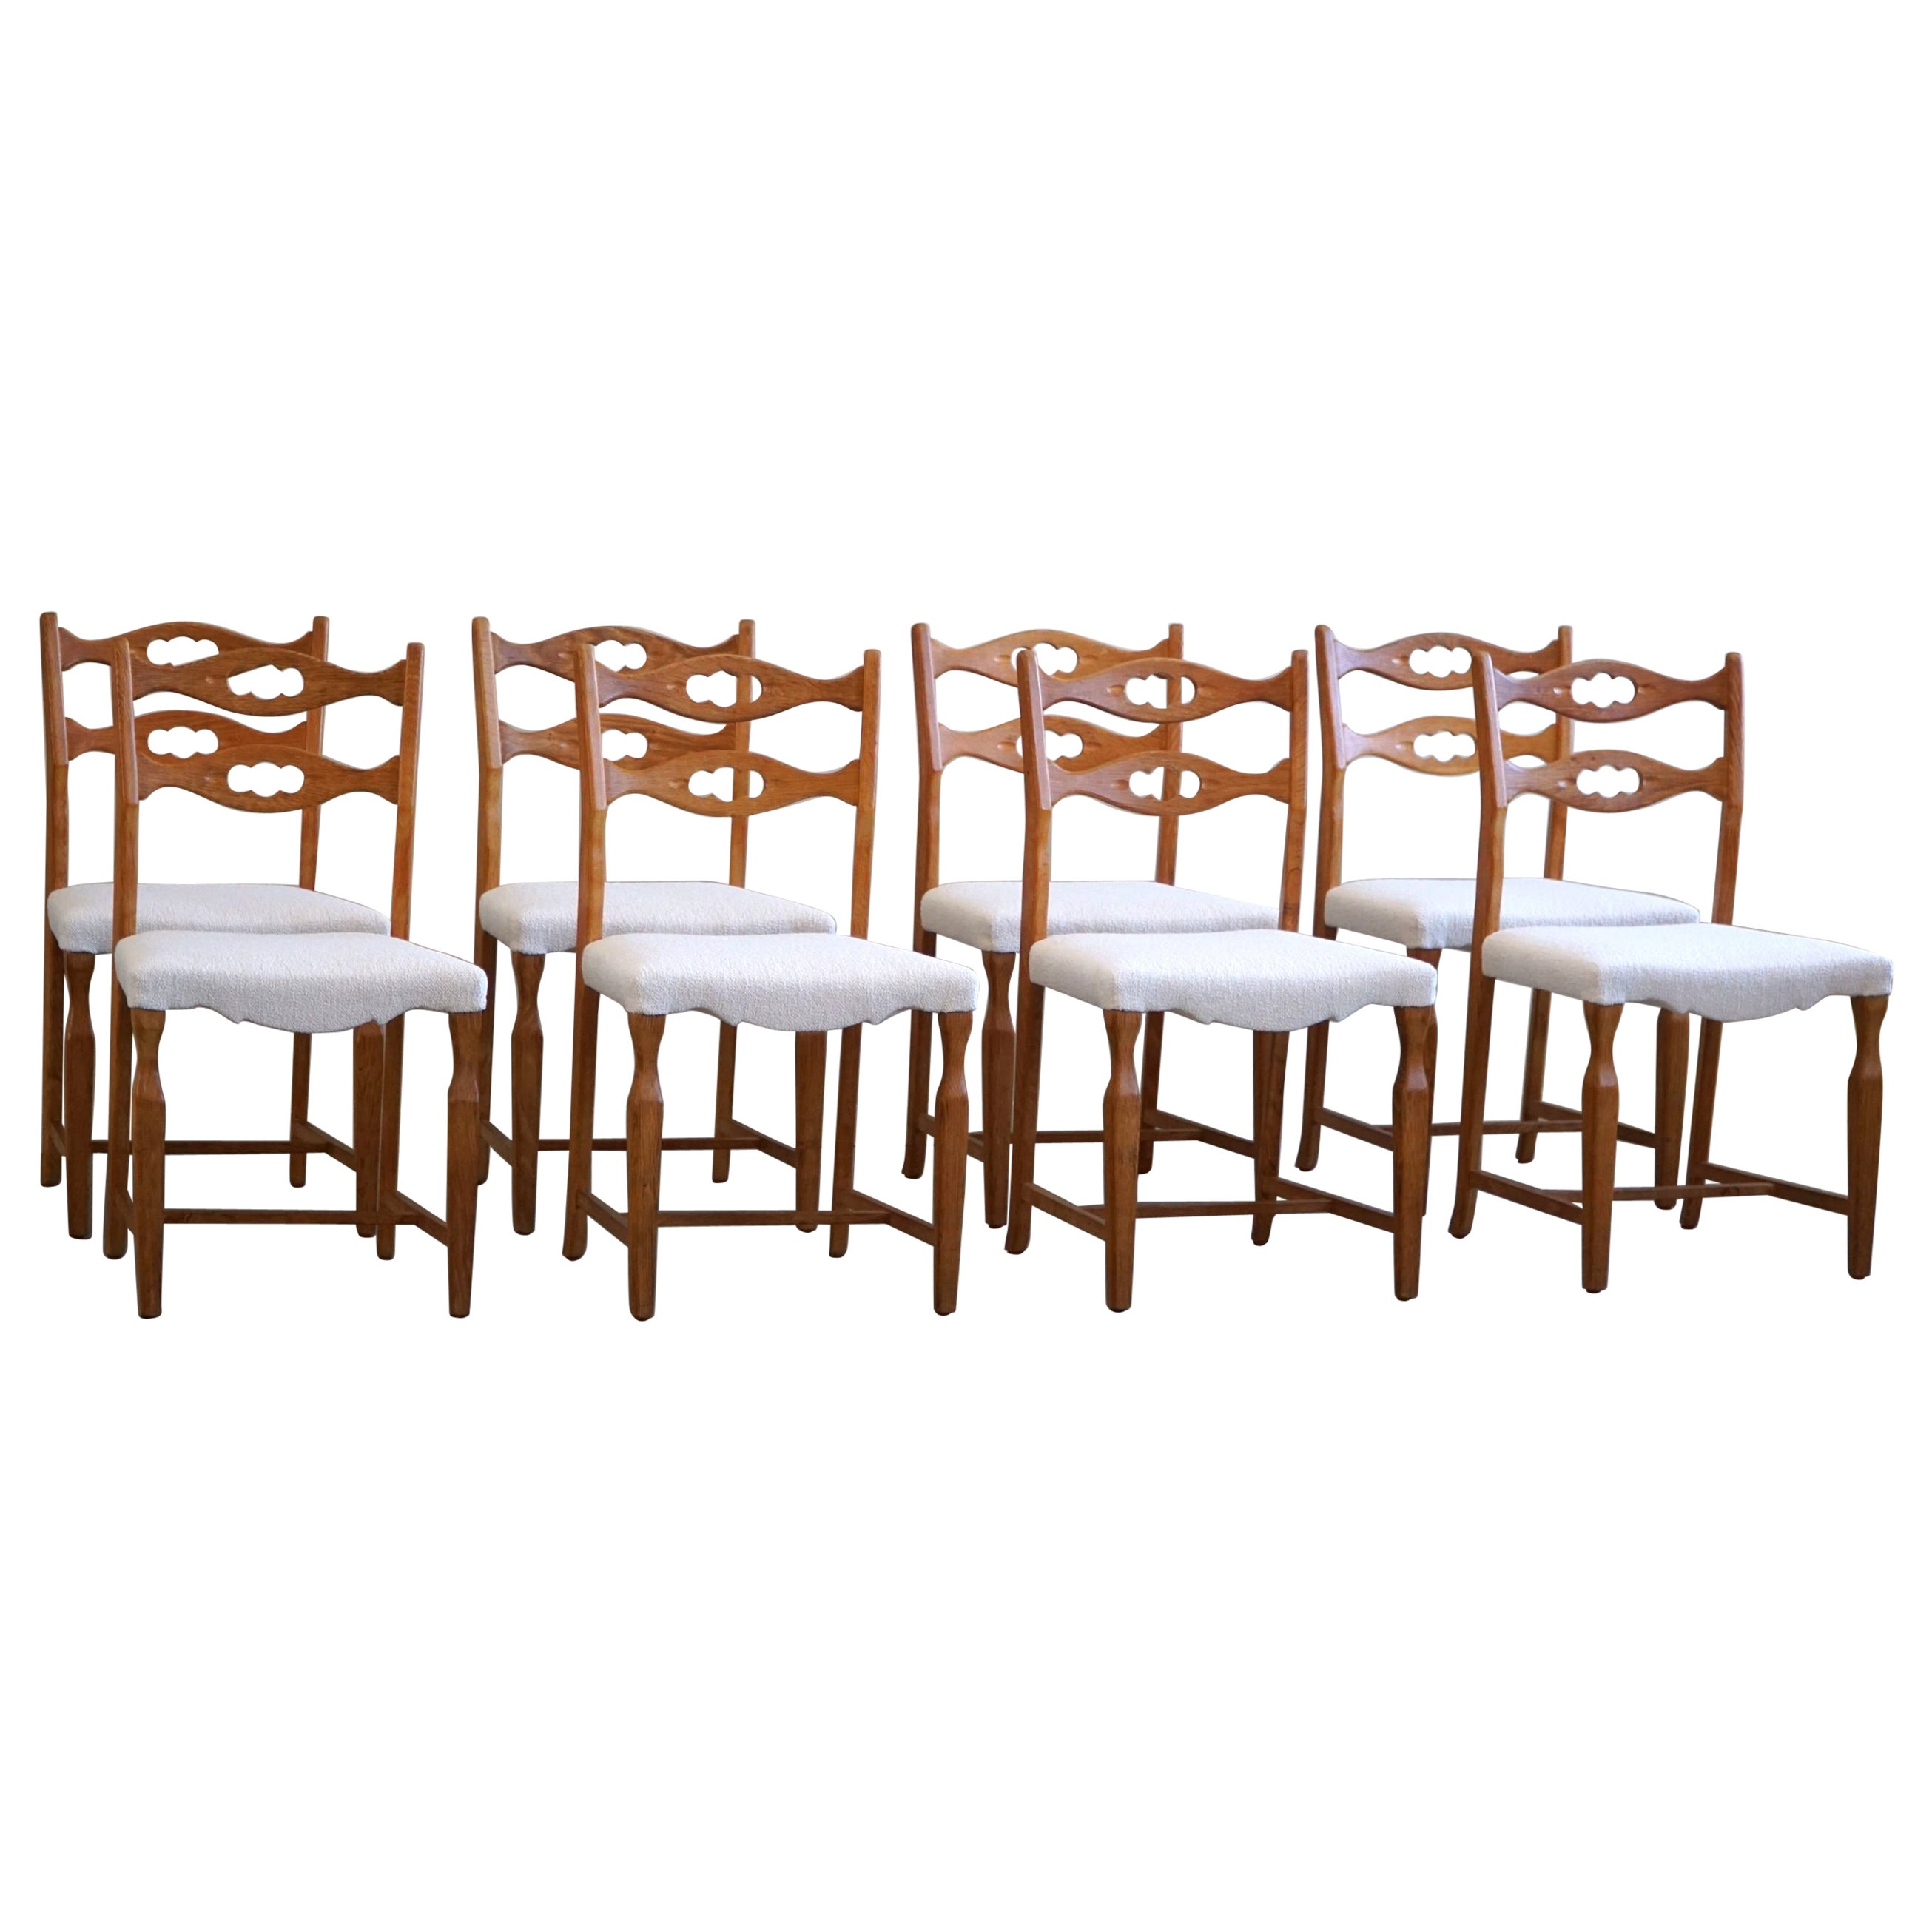 Henning Kjærnulf, Set of 8 Dining Chairs in Oak & Bouclé, Danish Modern, 1960s